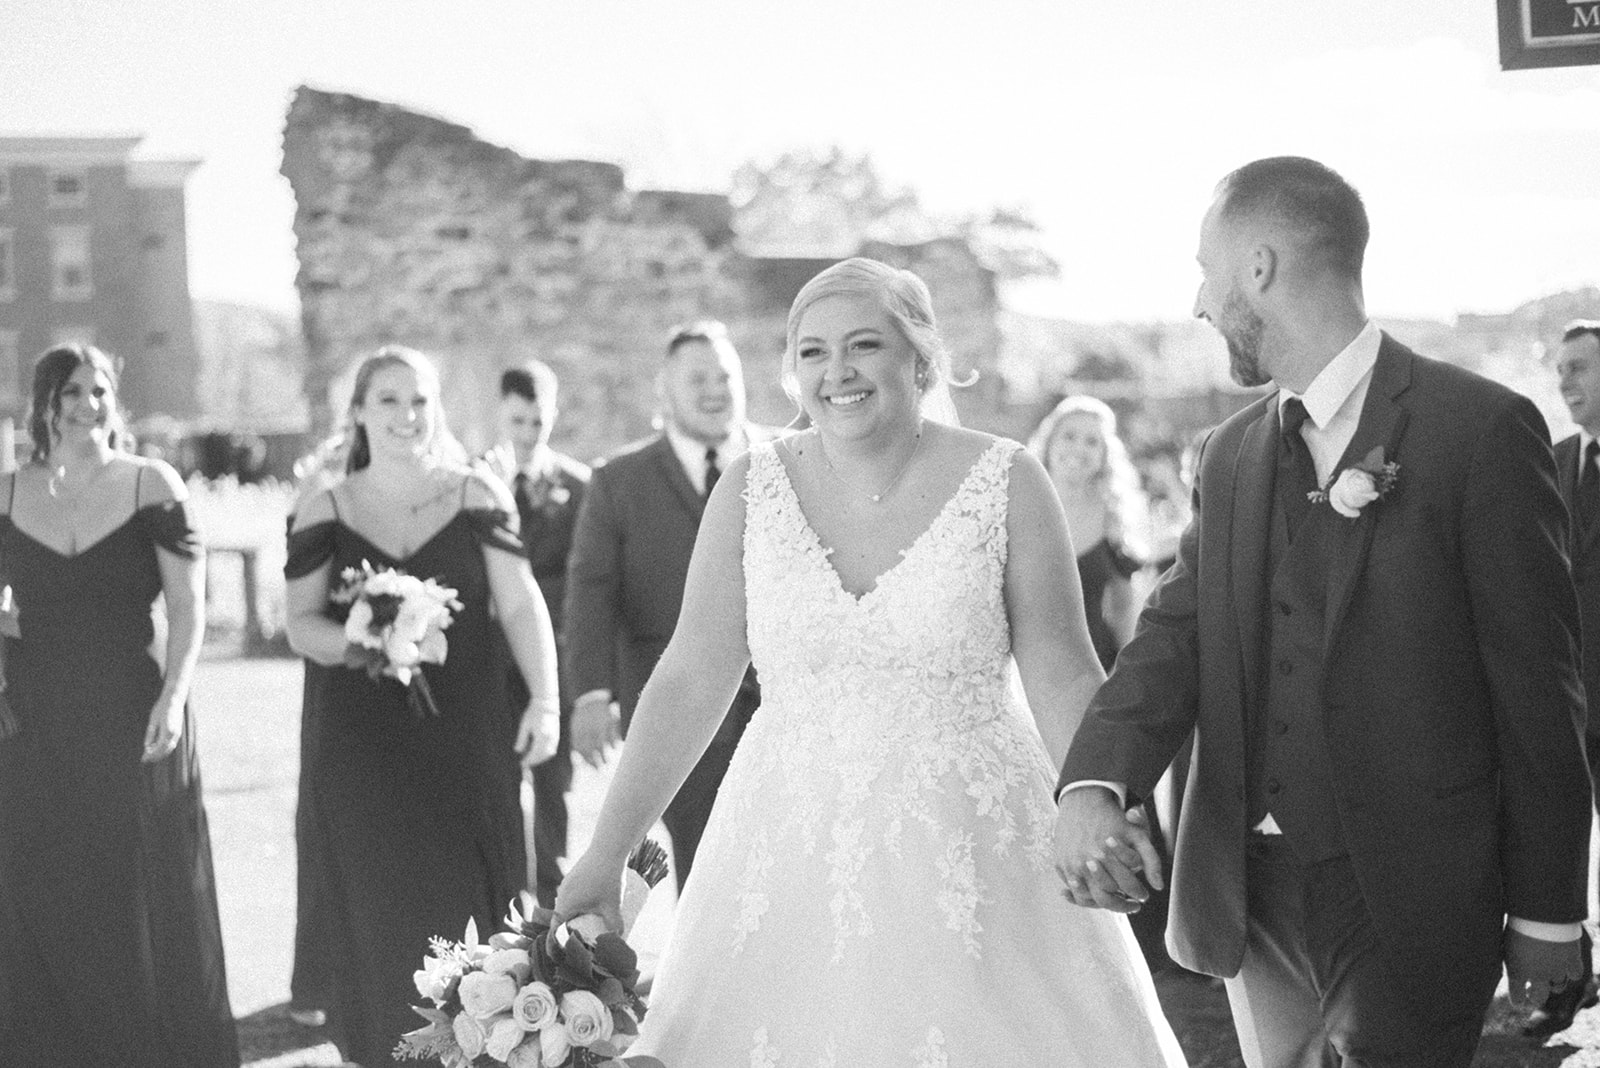 Pennsylvania wedding photographer captures bride and groom walking hand in hand